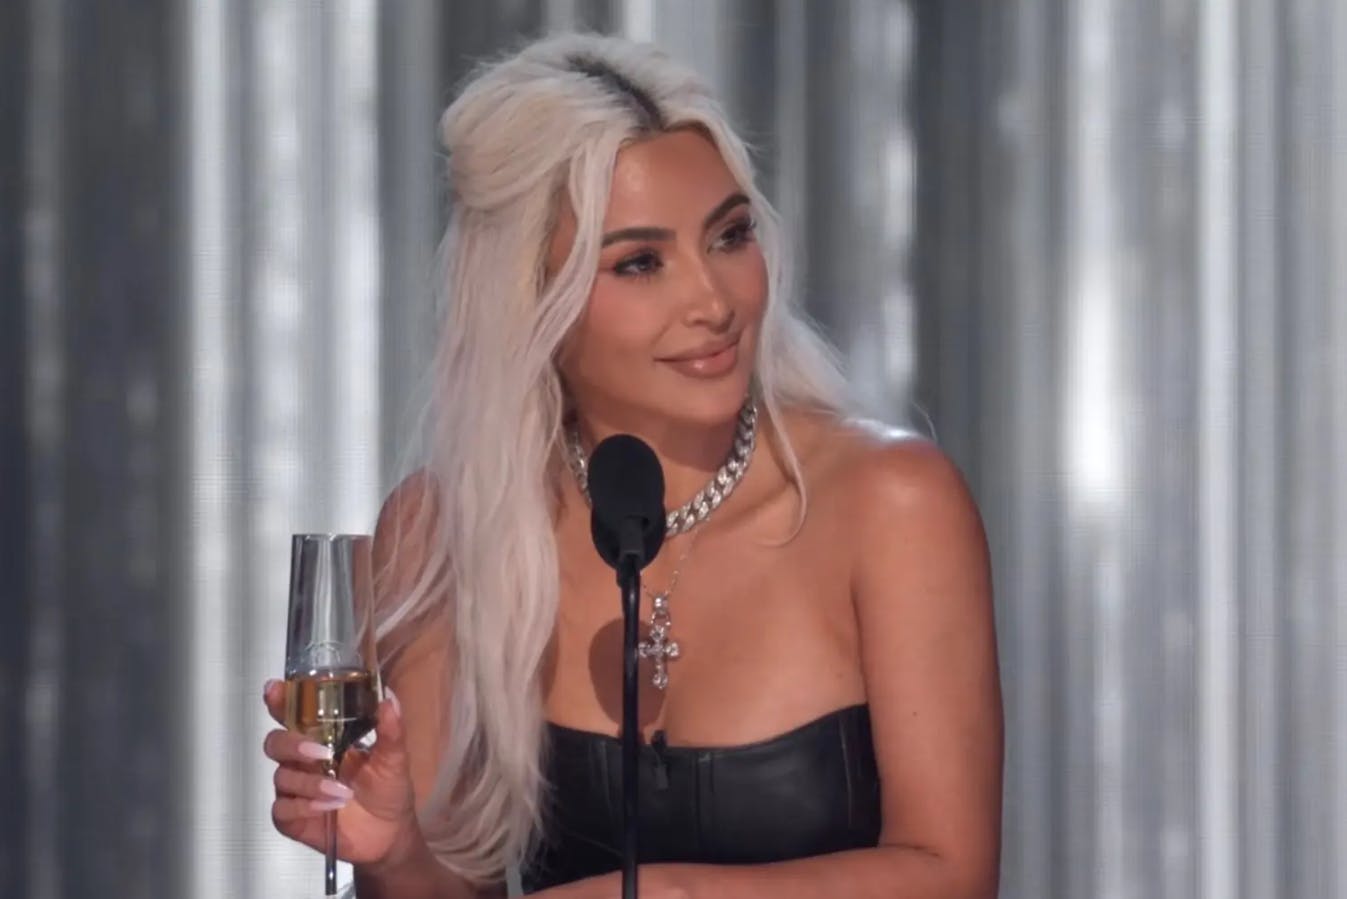 Kim Kardashian gav det buhende publikum et skævt blik, efter hendes monolog blev afbrudt.